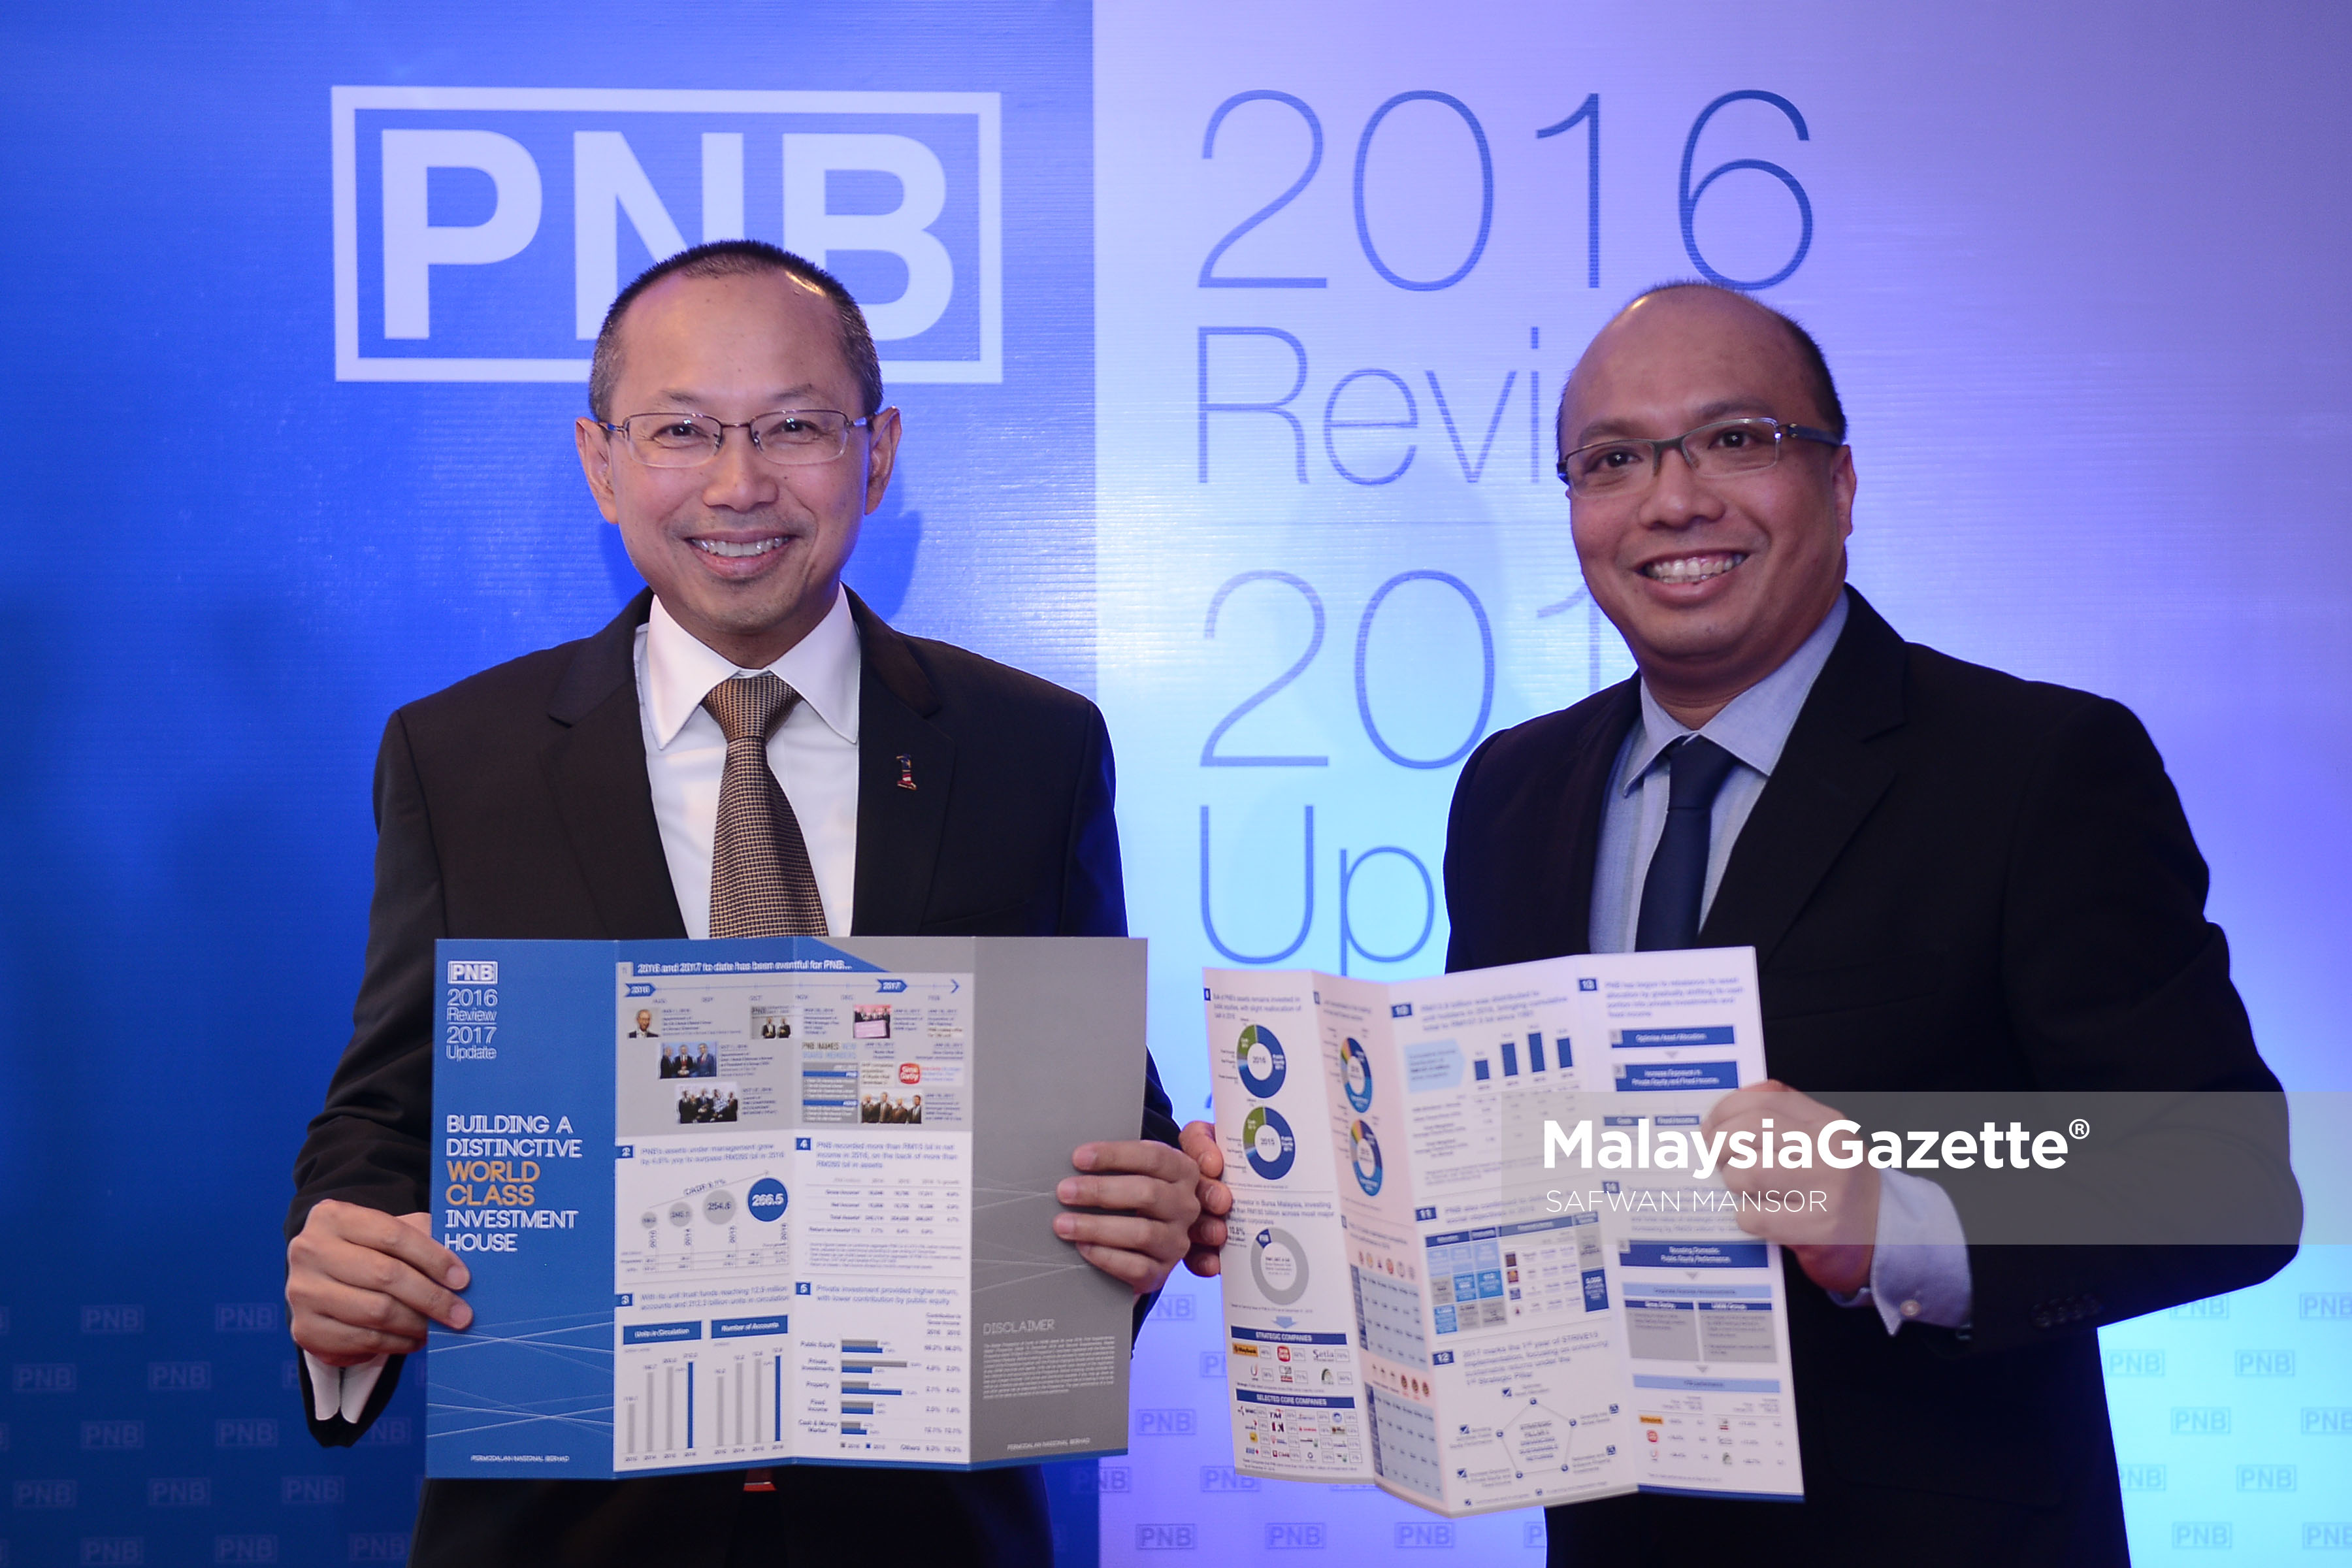 Pengerusi Permodalan Nasional Bhd (PNB), Tan Sri Abdul Wahid Omar (kiri) bersama Ketua Pegawai Eksekutif (CEO) kumpulan Permodalan Nasional Berhad (PNB), Datuk Abdul Rahman Ahmad (kanan) menunjukkan laporan Prestasi Tahunan PNB bagi Tahun 2016/2017 di Menara PNB, Kuala Lumpur. foto SAFWAN MANSOR, 27 MAC 2017